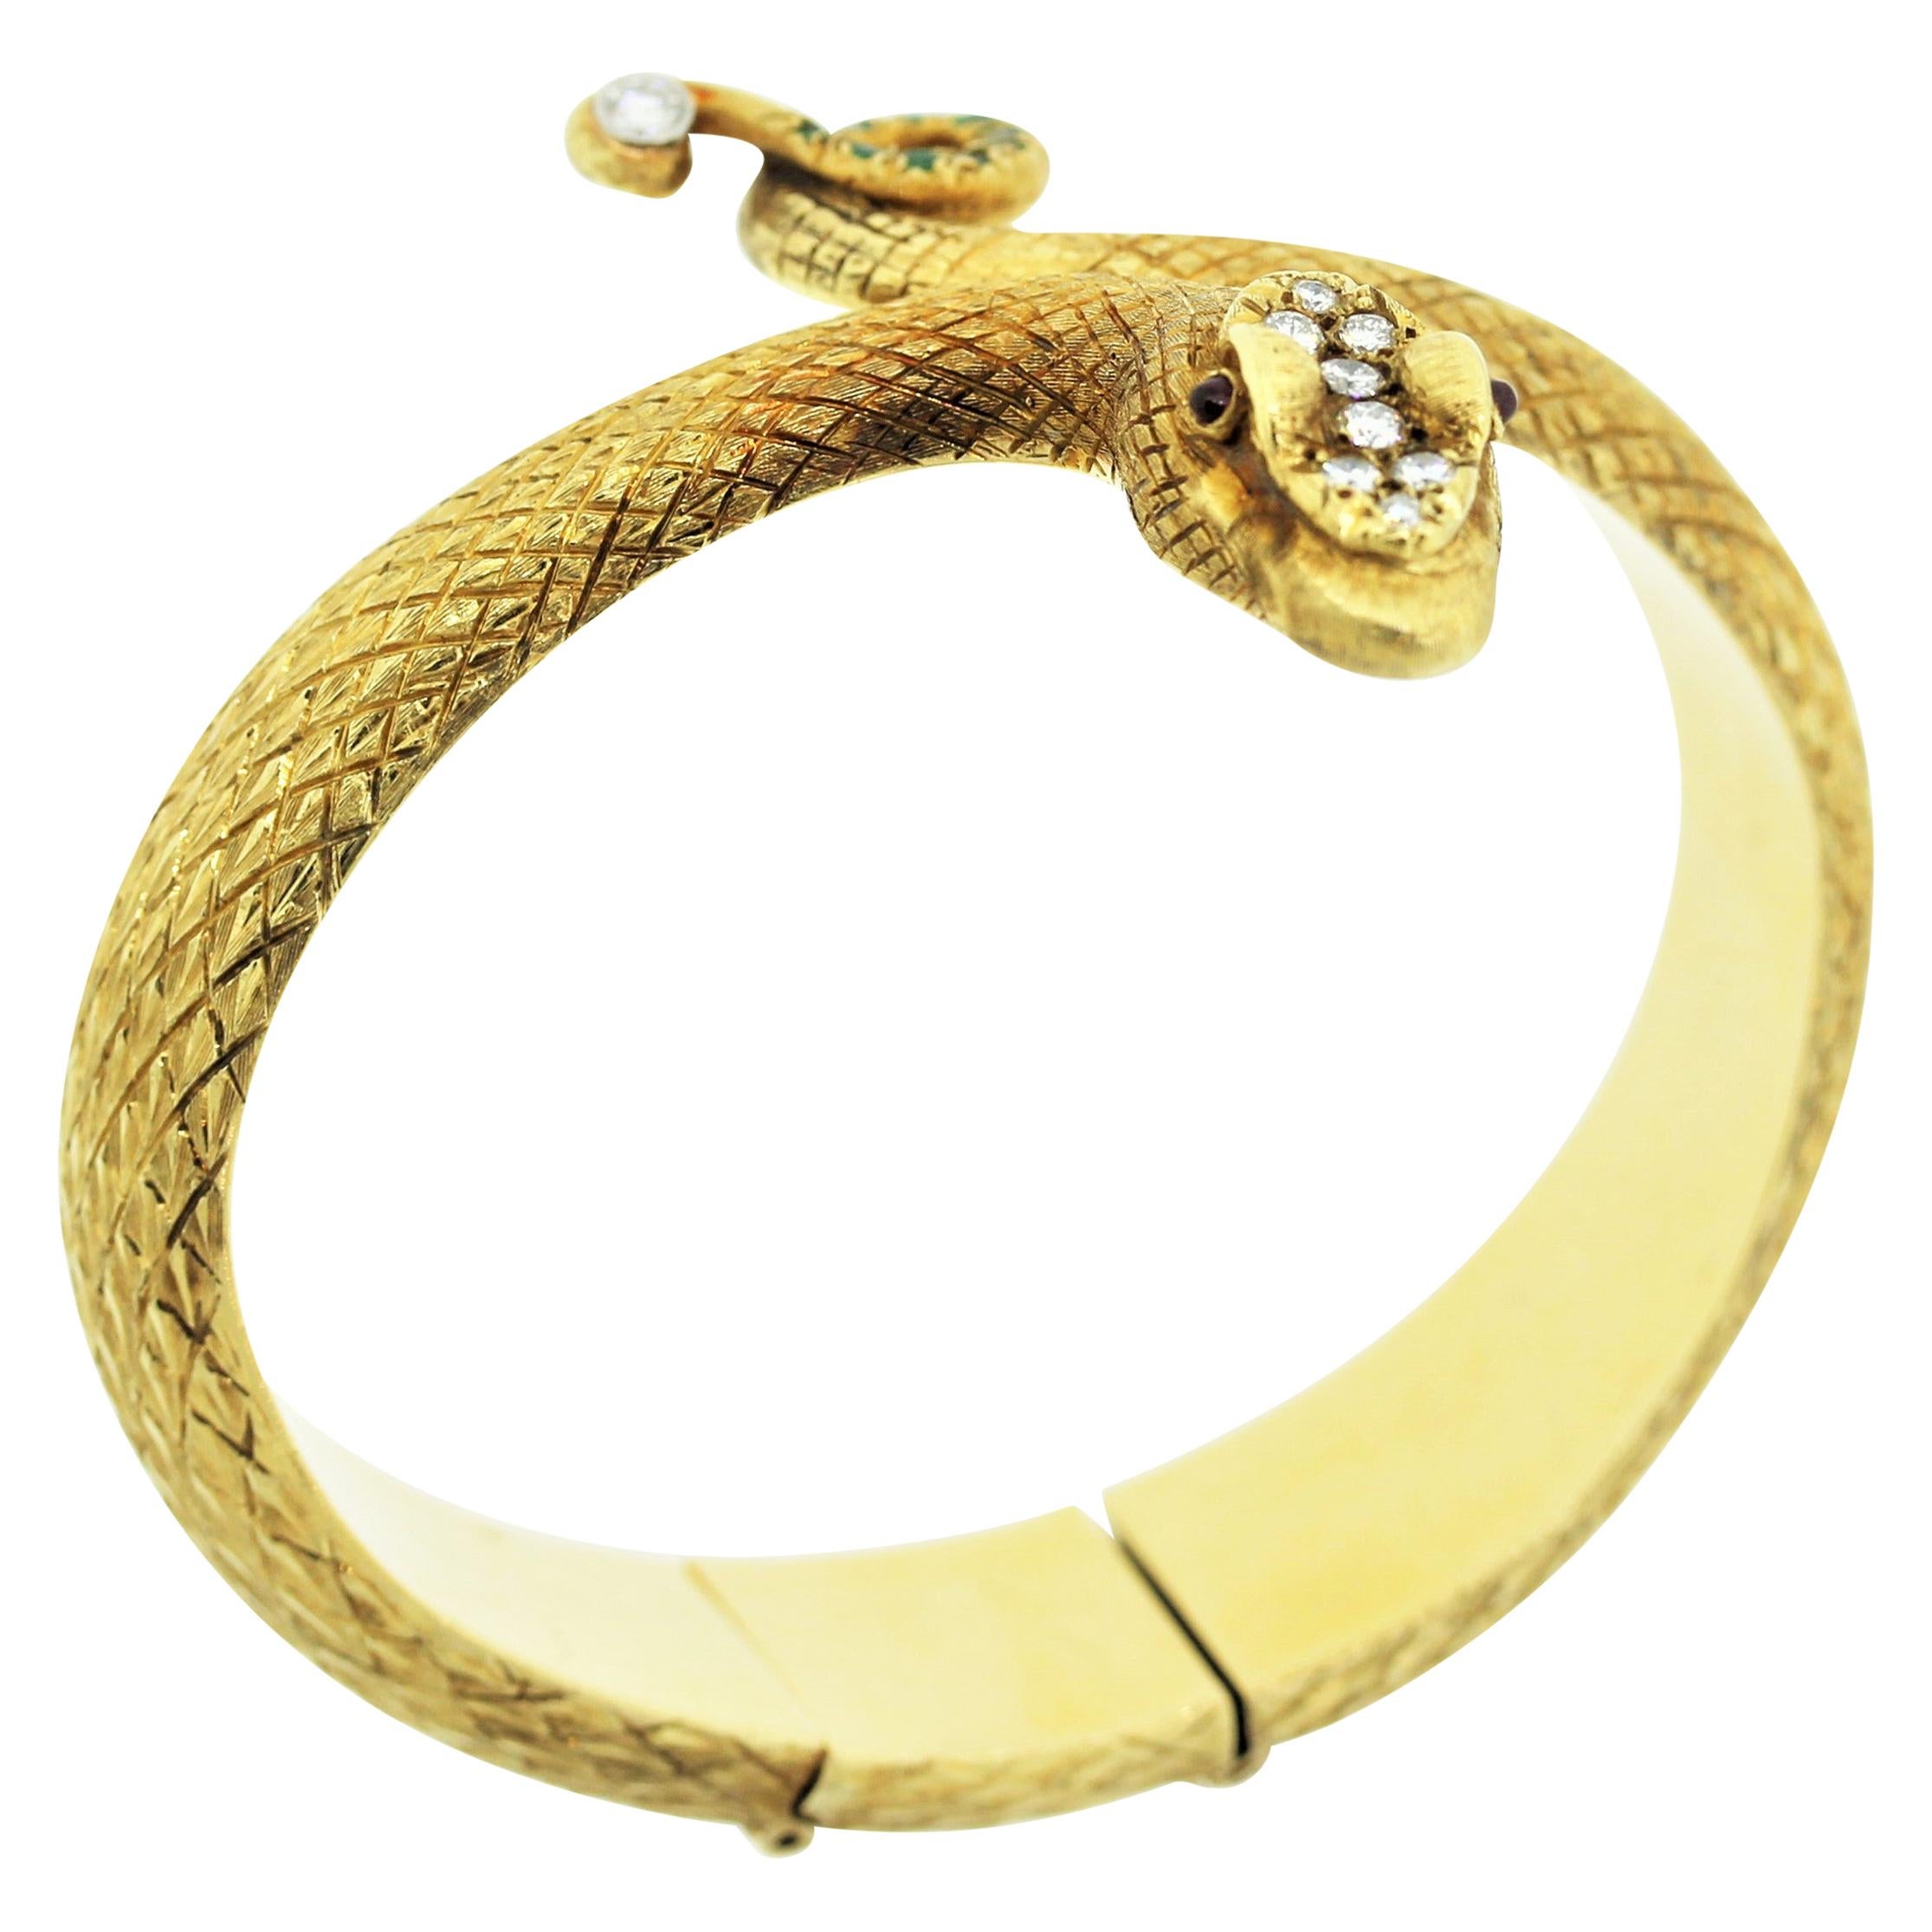 Cellino Cellino Diamant Edelstein Gold Schlangenarmreif Armband